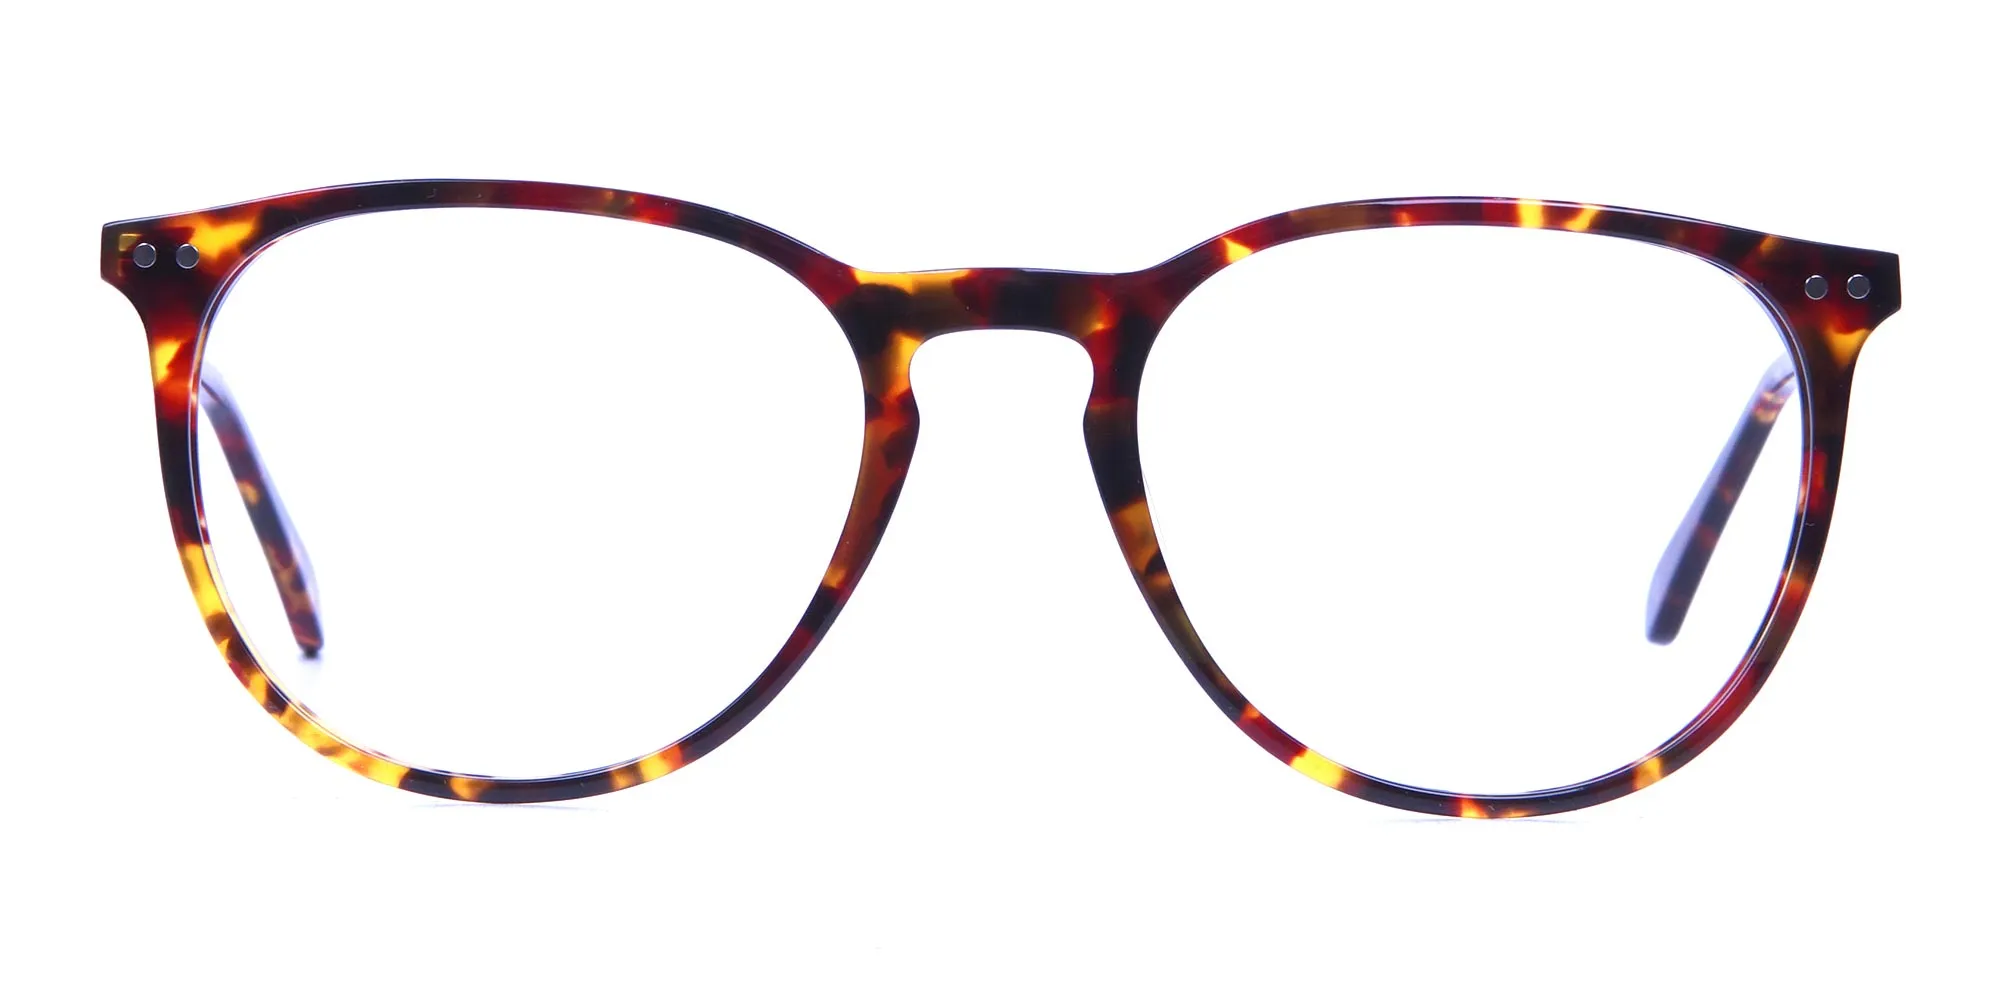 Neutral Round Glasses in Tortoiseshell Colour - 1